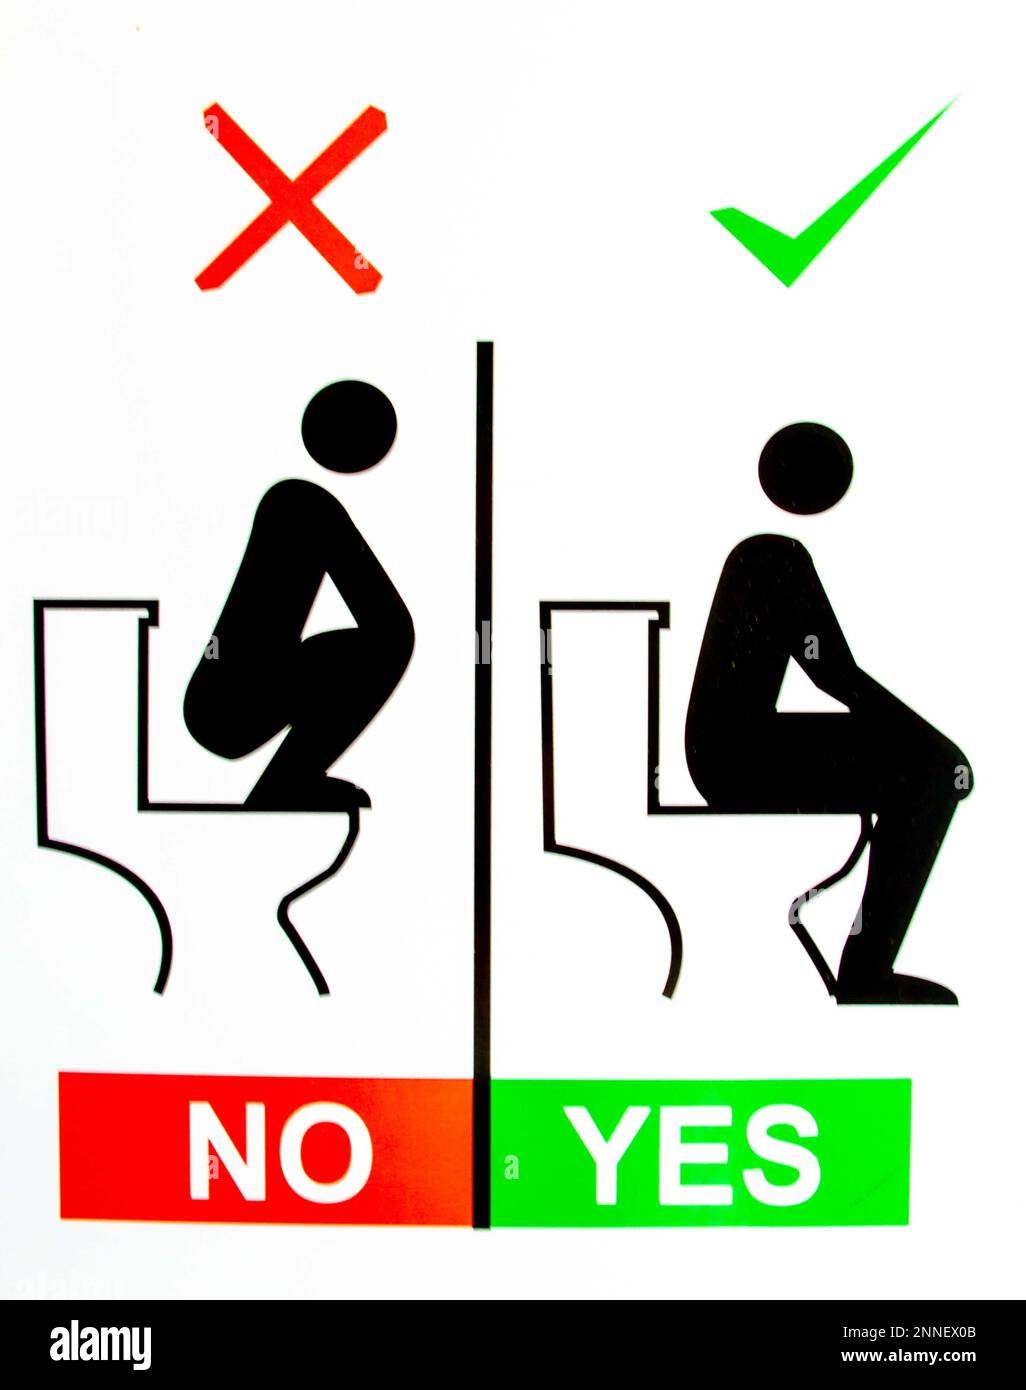 Akaroa, Nouvelle-Zélande - 24 janvier 2023 : instructions humoristiques sur la façon d'utiliser correctement les toilettes dans les installations touristiques. Banque D'Images